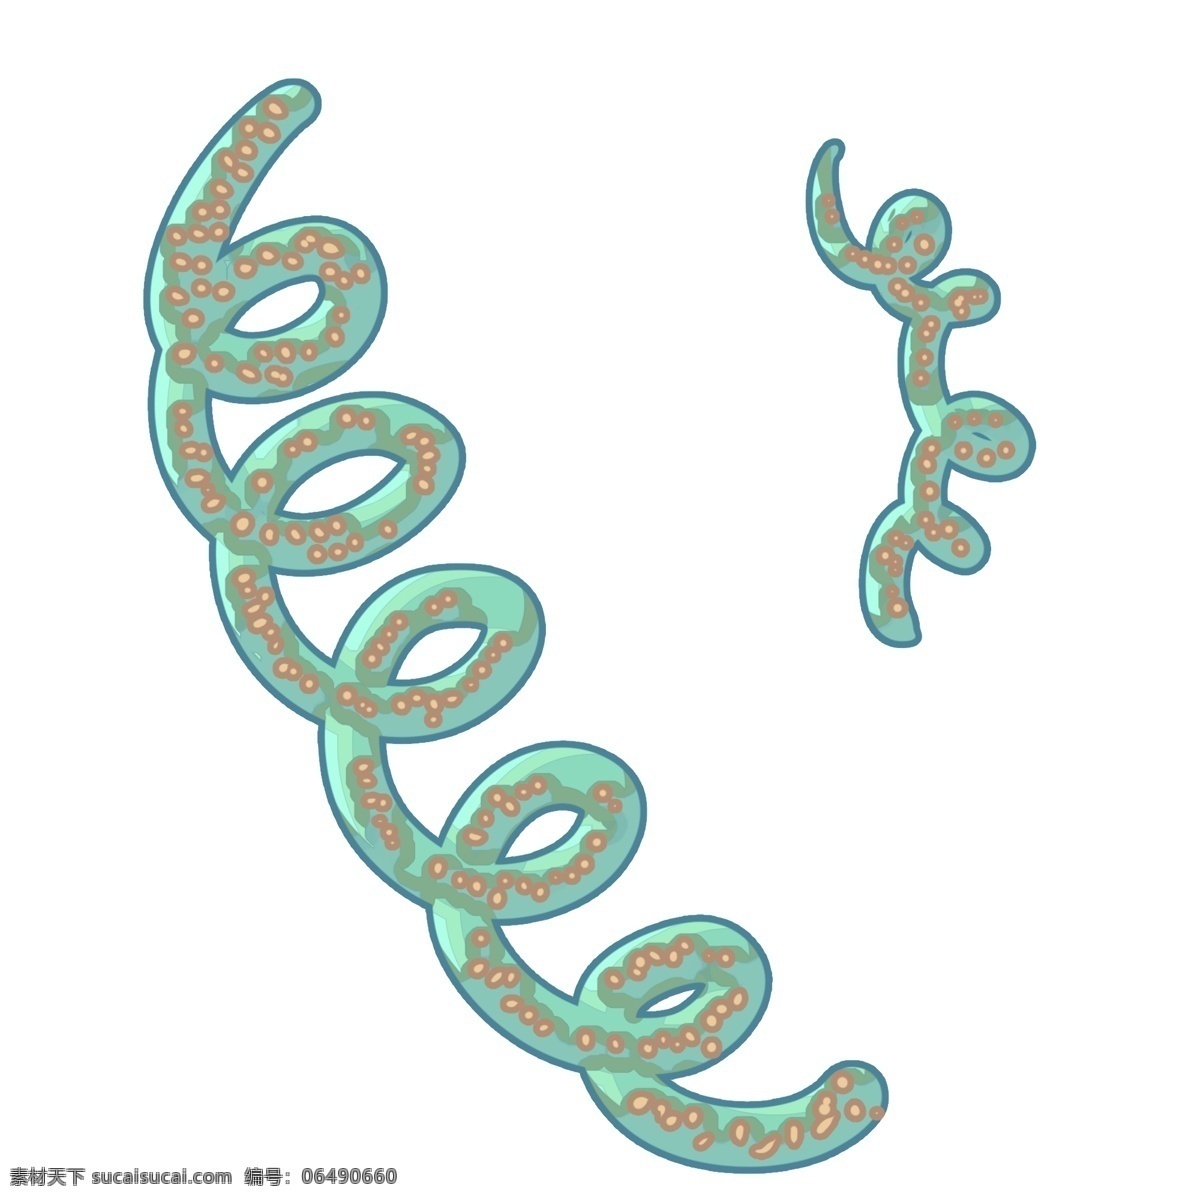 肠道 有害 细菌 插画 肠道的细菌 卡通插画 细菌插画 病菌插画 传染细菌 链条的细菌